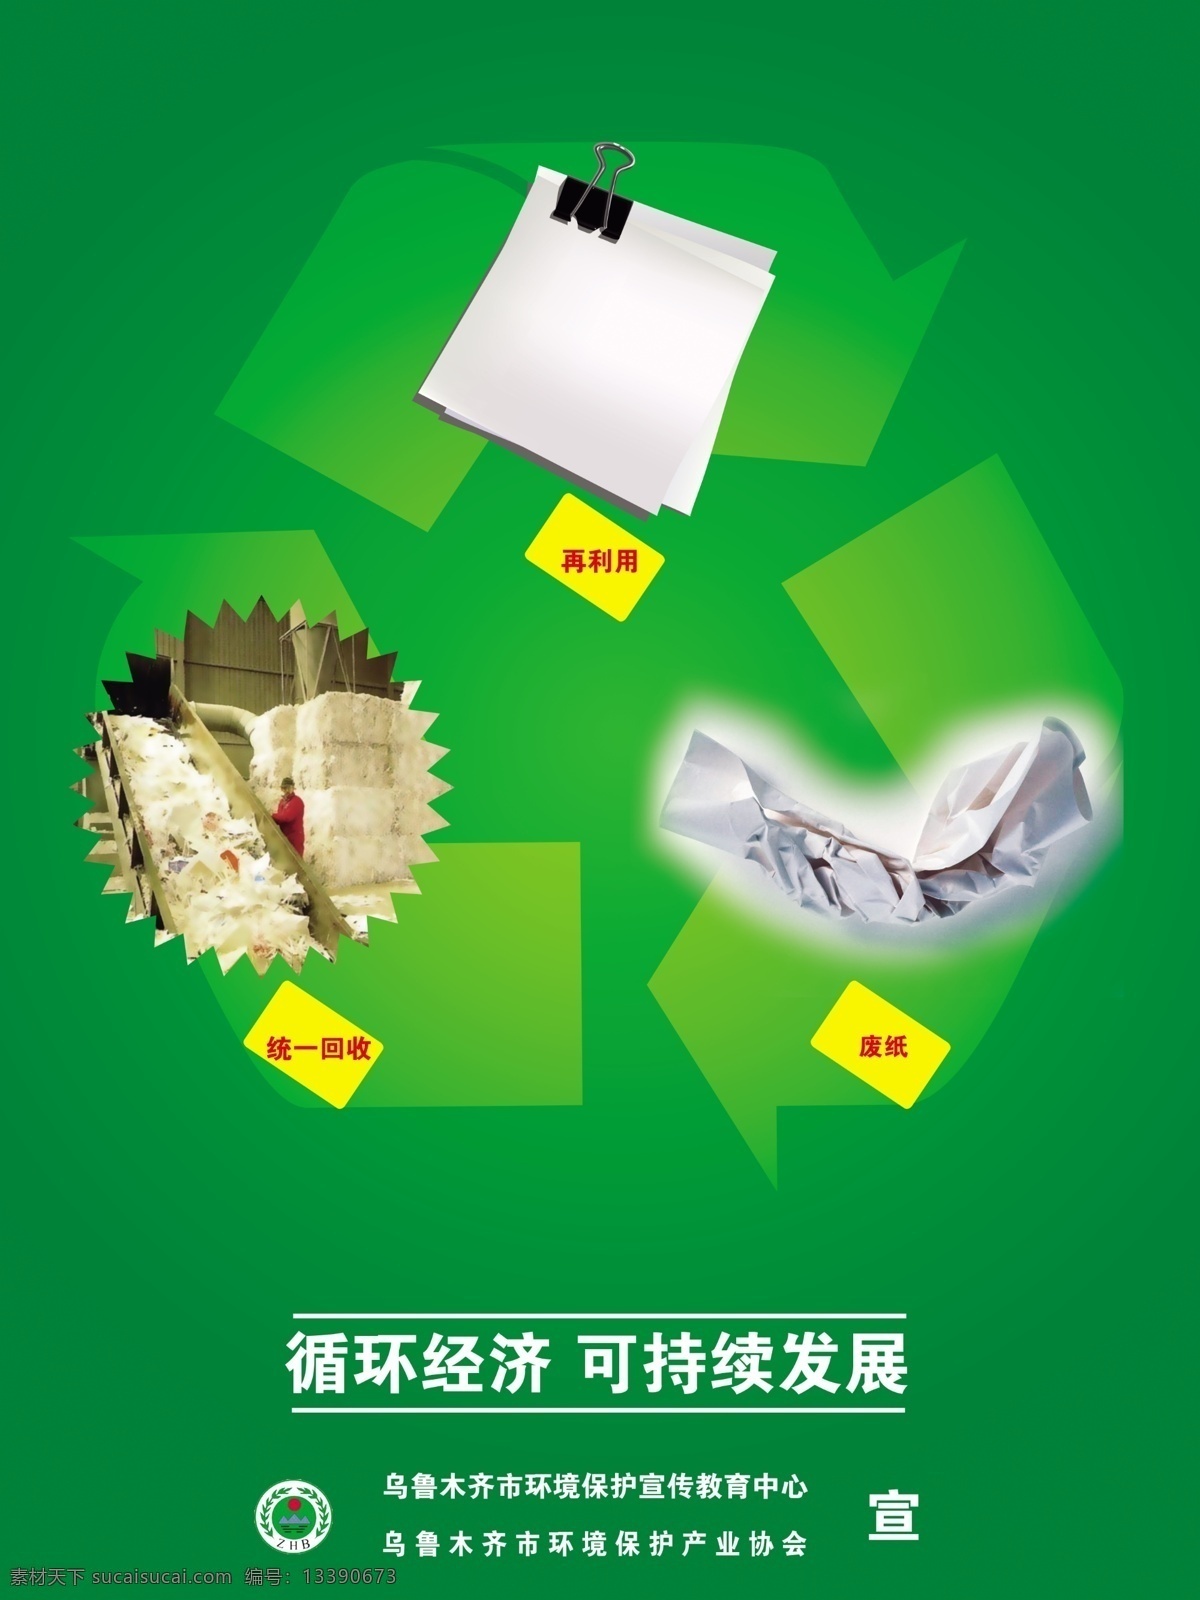 dm宣传单 公益广告 广告设计模板 回收 源文件 再利用 废纸 好纸 循环利用 可持续发展 循环模式 展板 公益展板设计